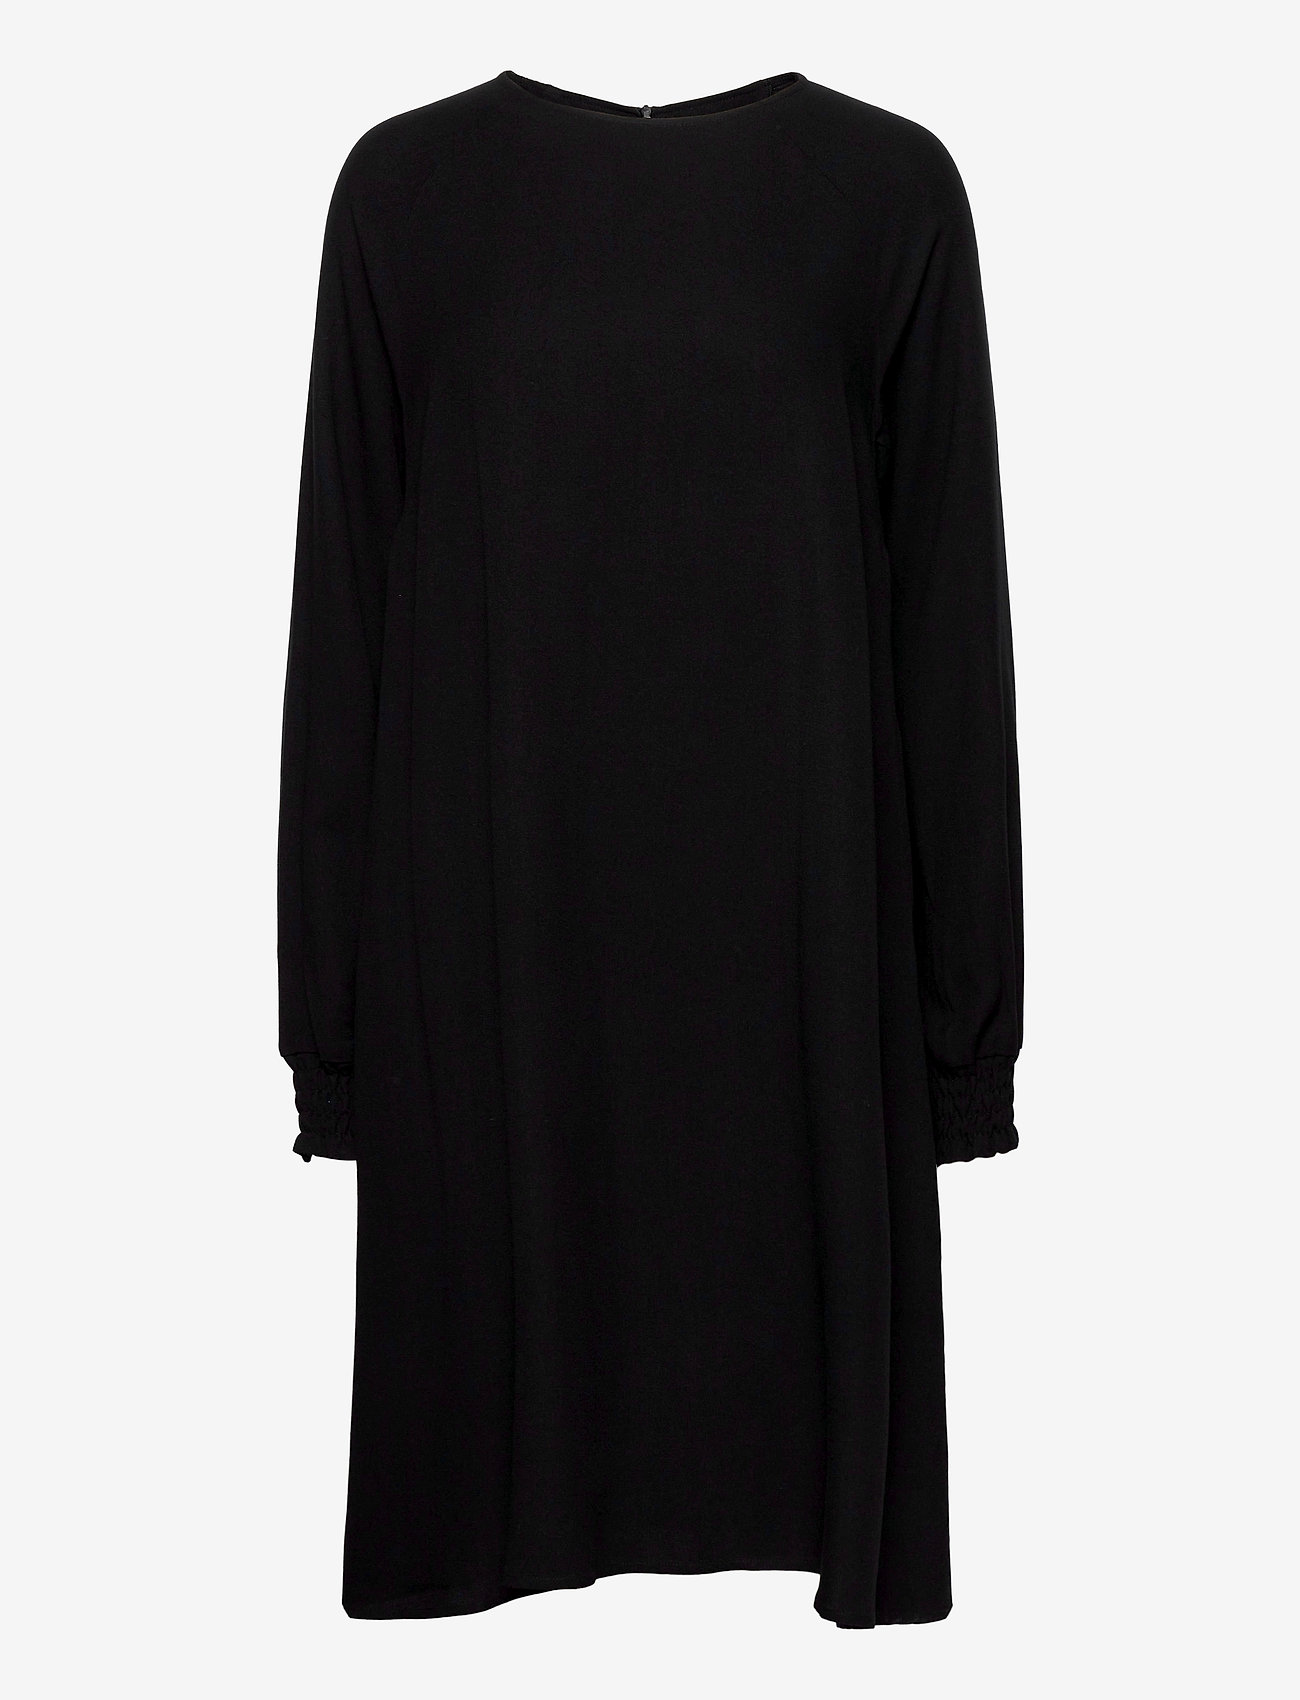 Makia - Nominal Long Sleeve Dress - midiklänningar - black - 0